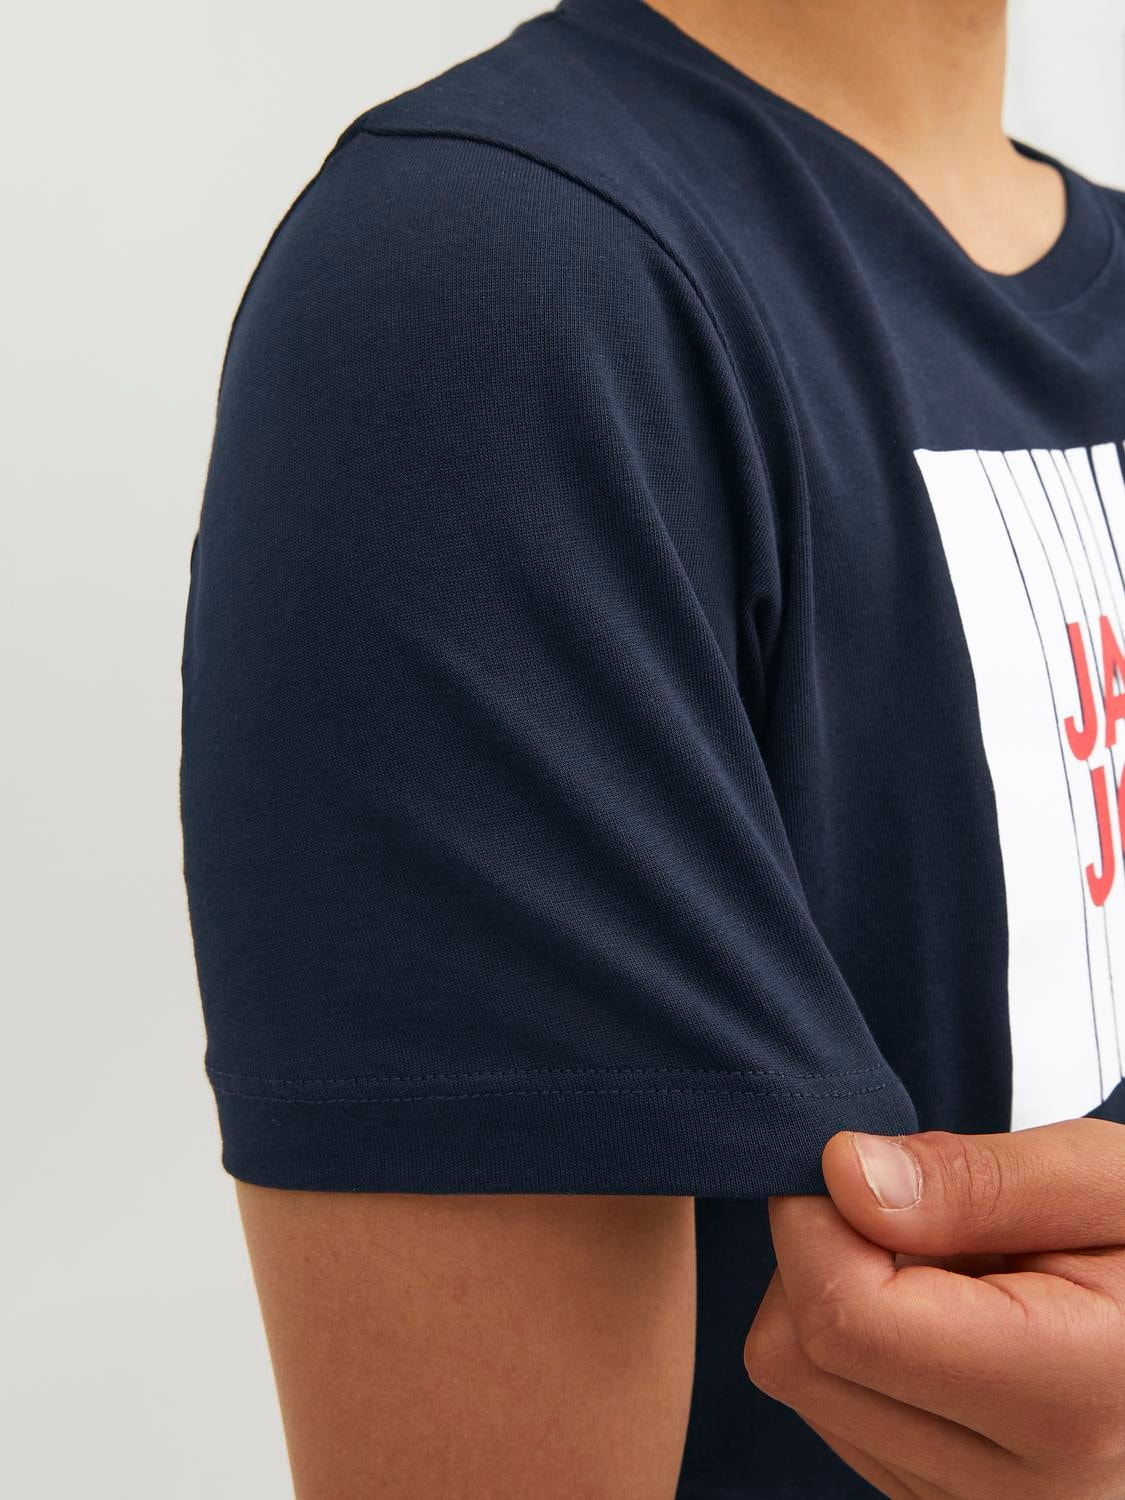 Jack & Jones Logo T-shirt Til drenge -Navy Blazer - 12237411